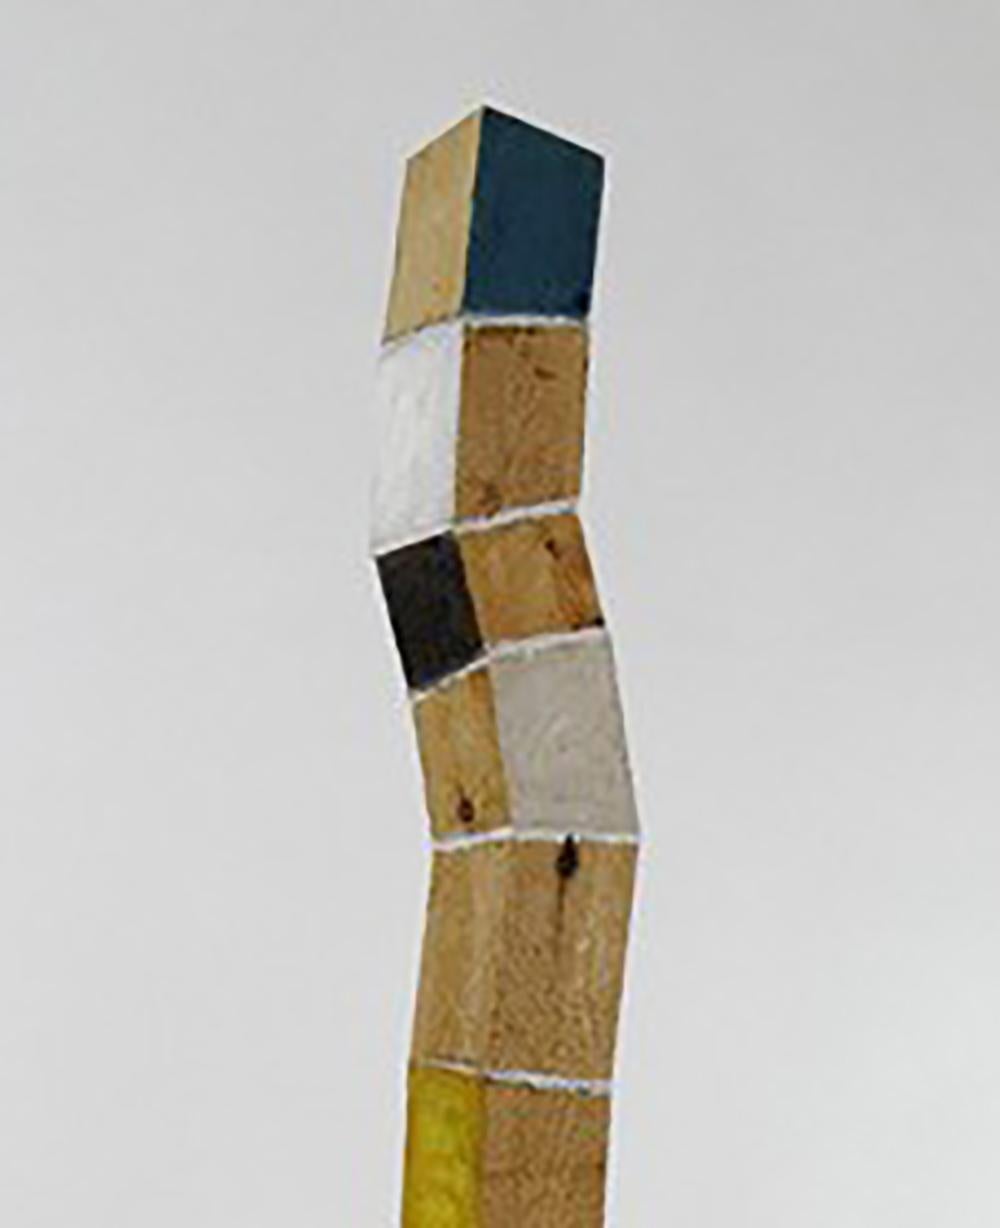 Nouvelle croissance (sculpture de tour debout verticale en bois courbé et multicolore)  - Sculpture de Peter Hoffman